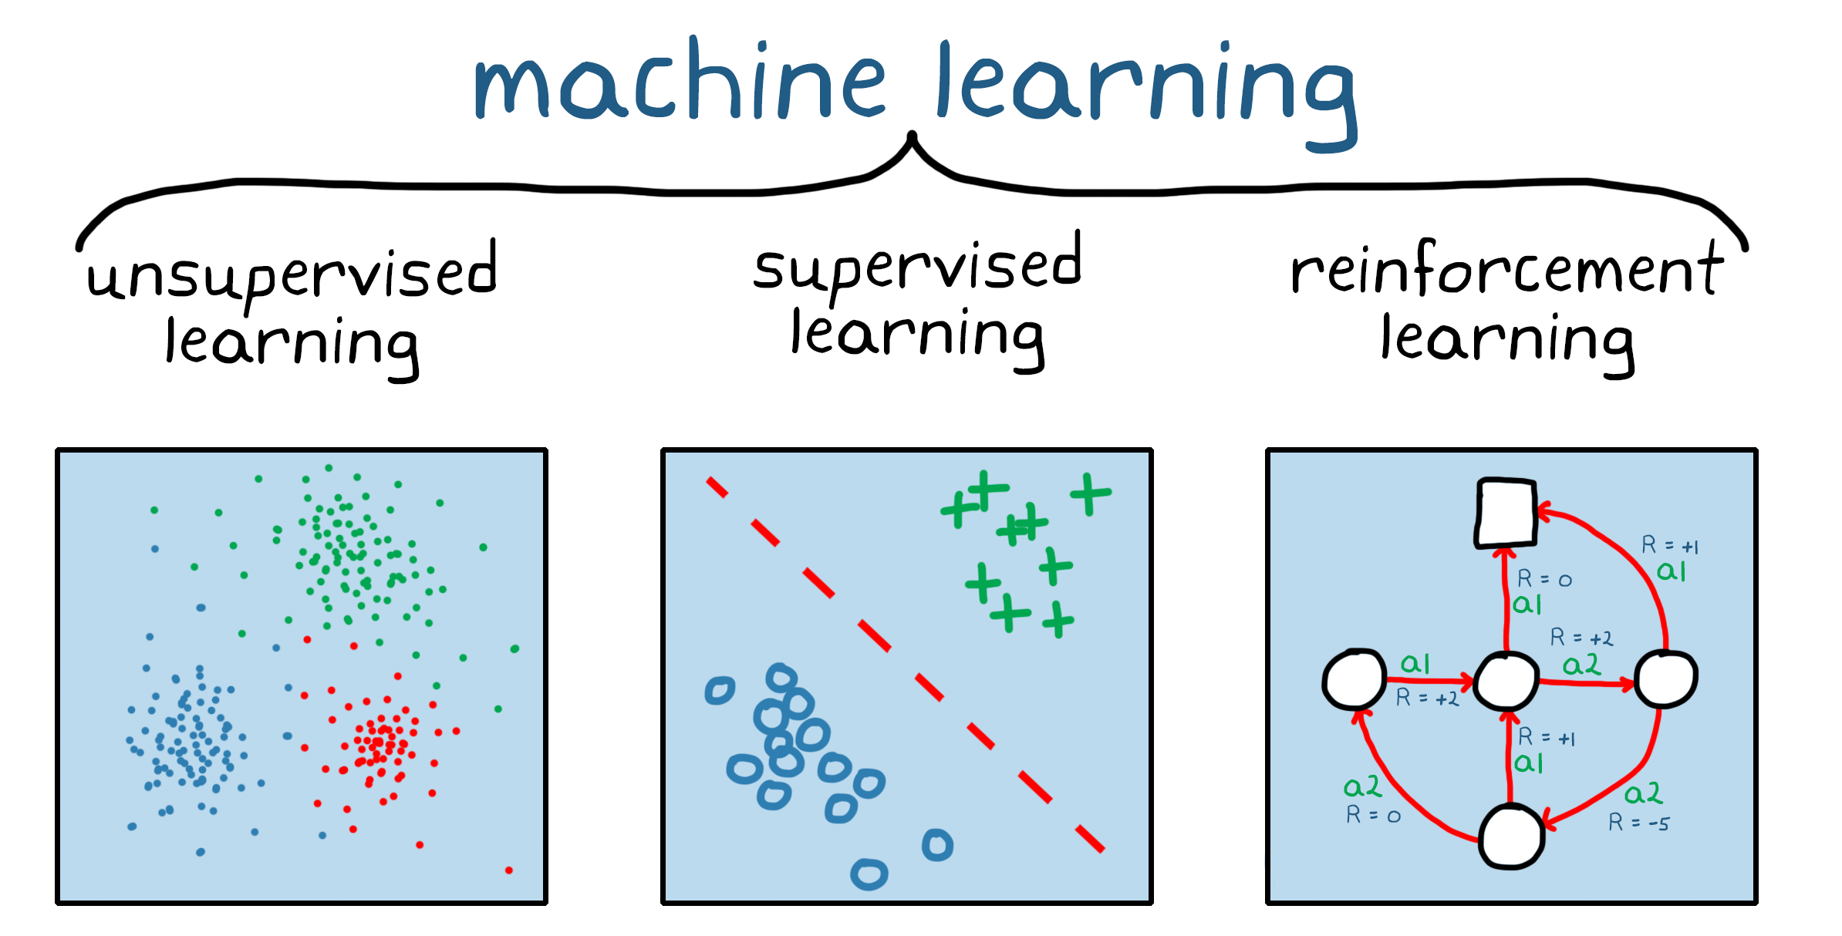 図 1. 機械学習の 3 つのカテゴリ: 教師なし学習、教師あり学習、強化学習